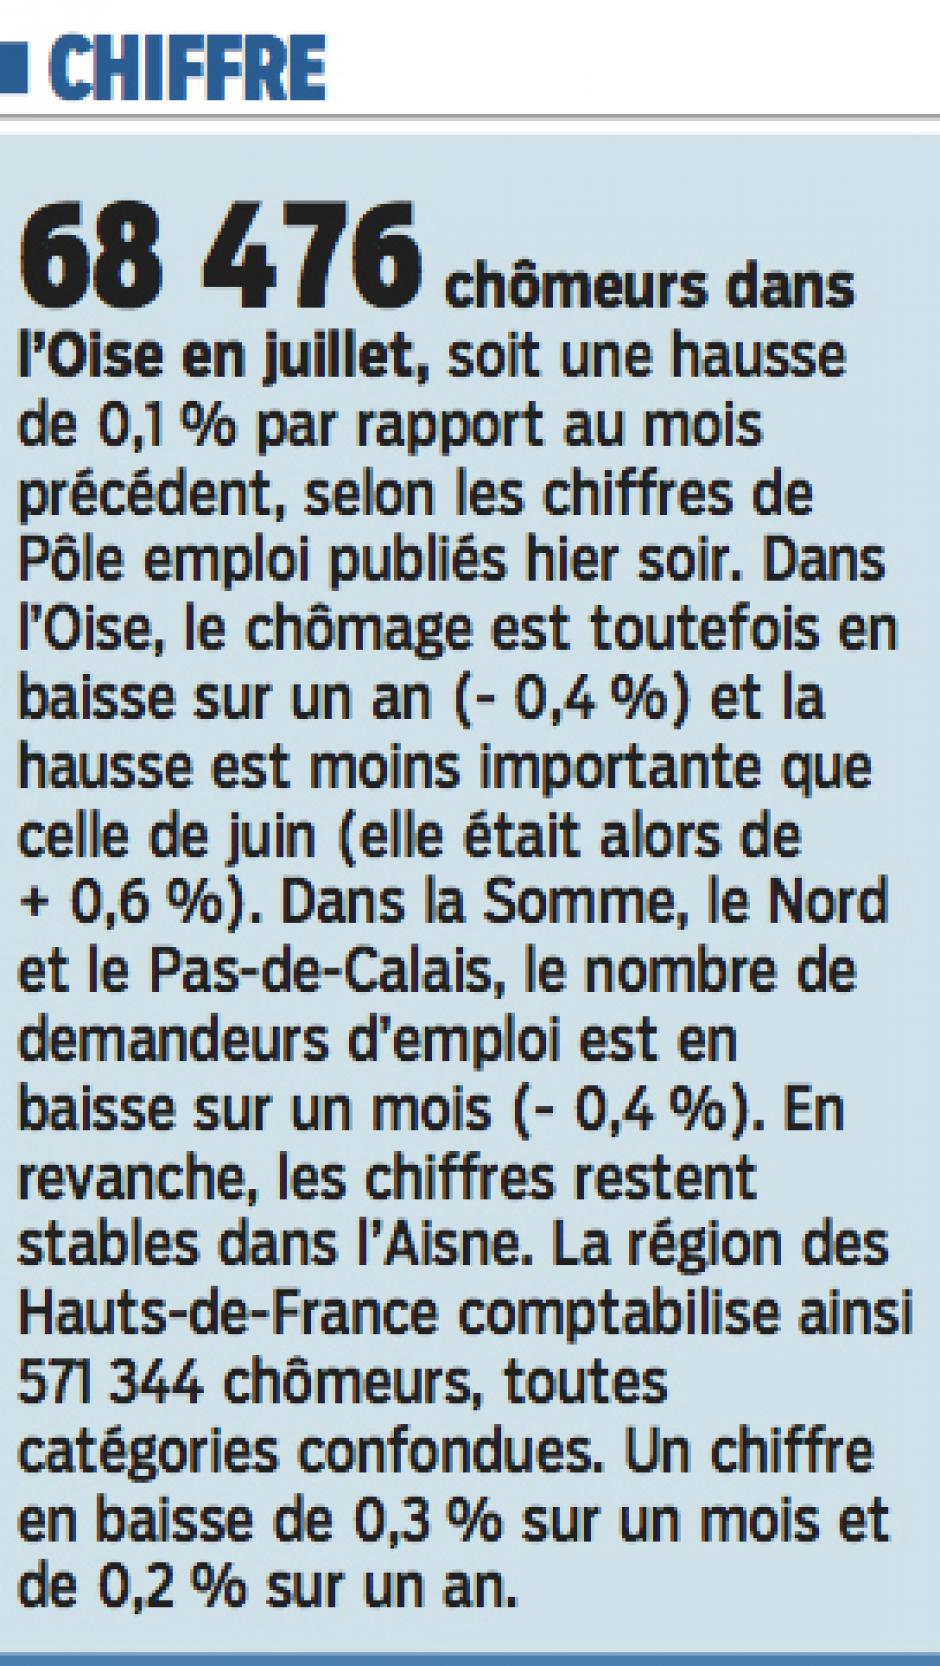 20160825-LeP-Oise-68 476 chômeurs dans le département en juillet